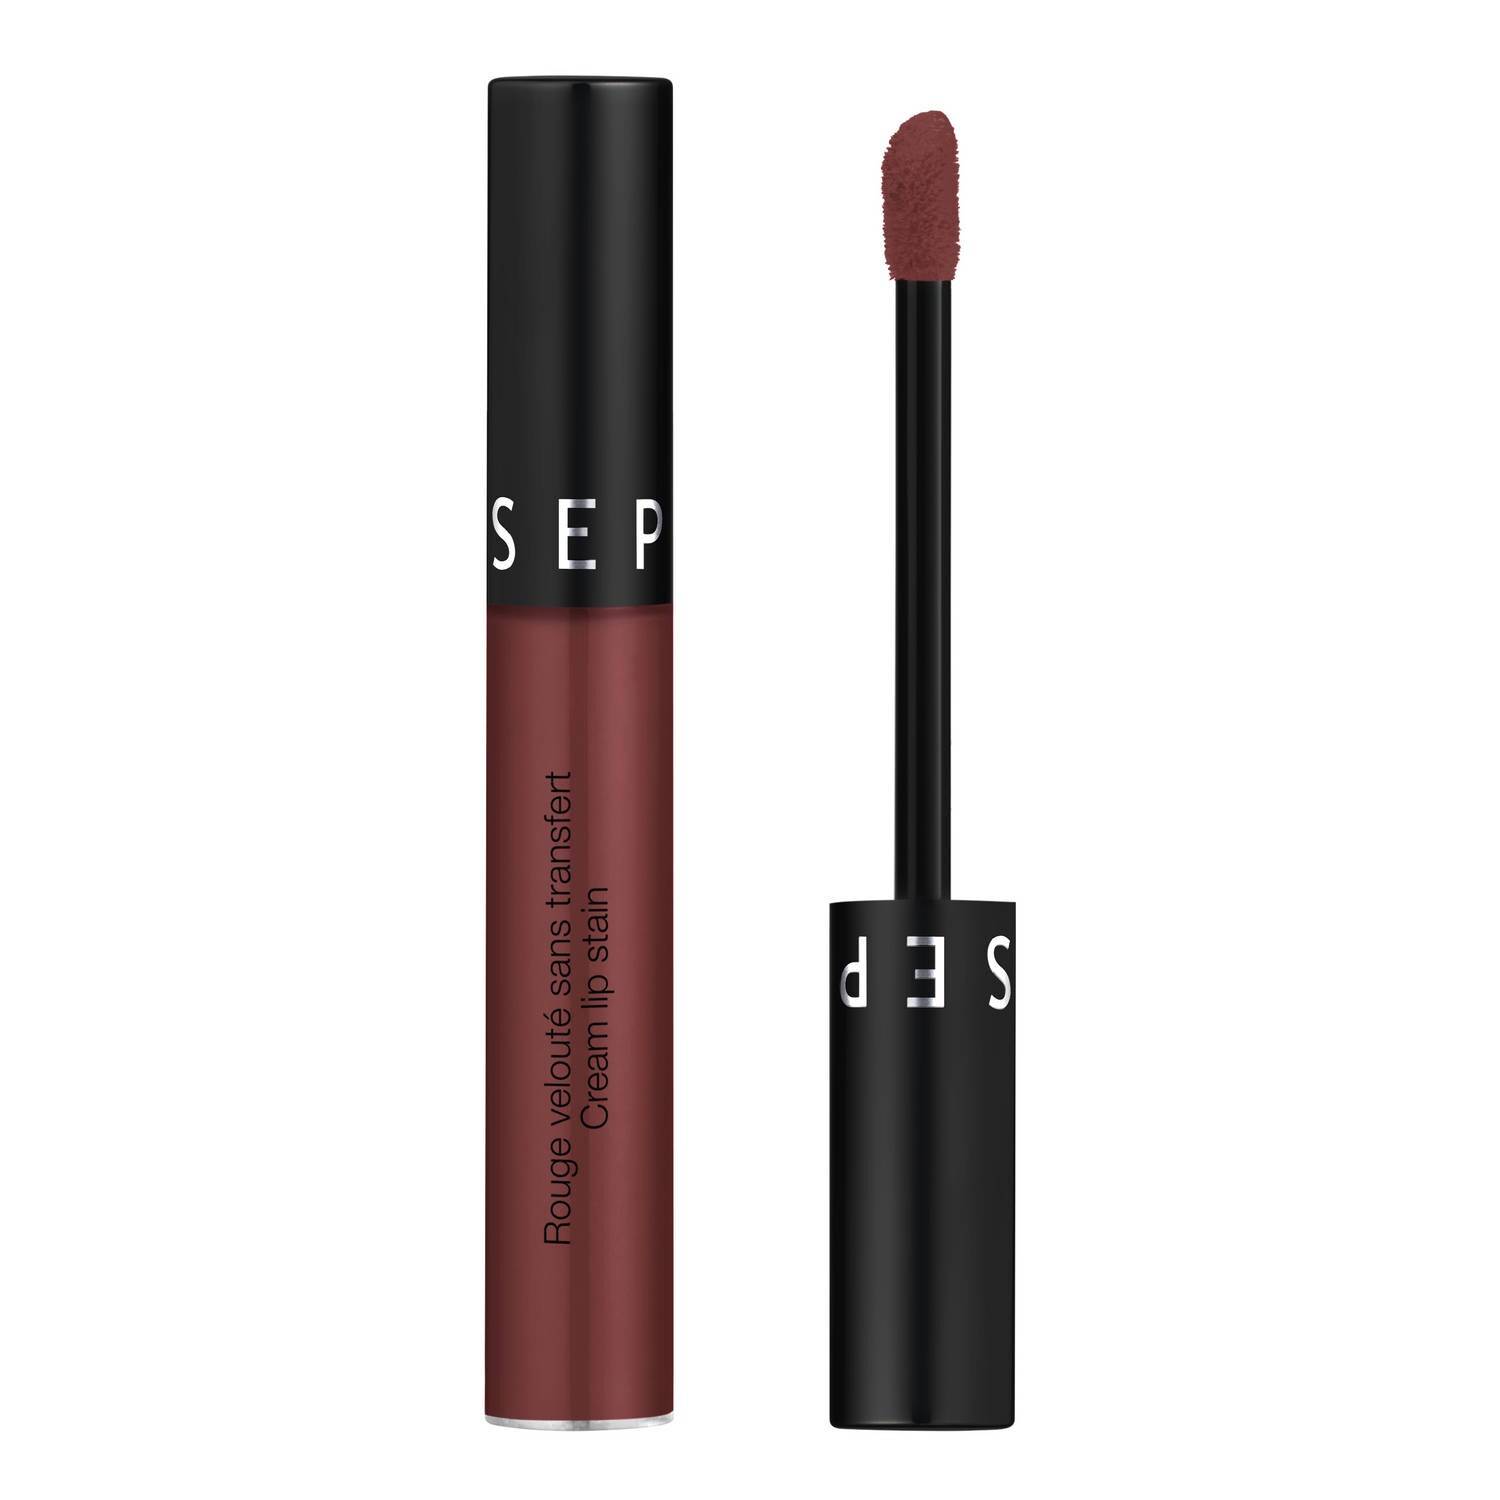 Sephora Collection Cream Lip Stain Matte Liquid Lipstick 5Ml 24. Burnt Sienna